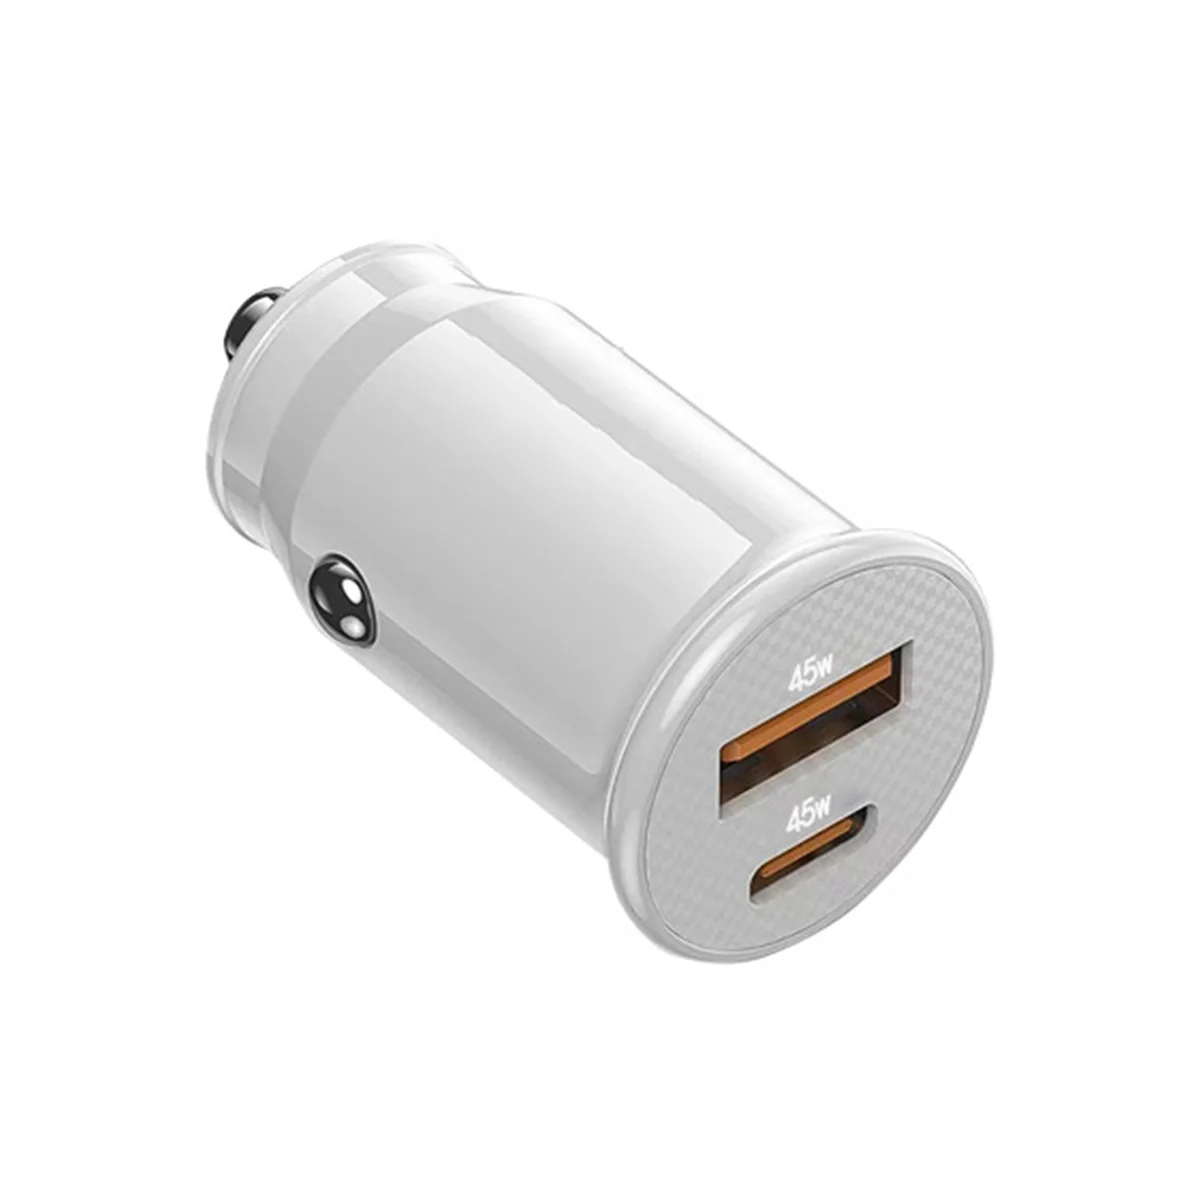 Mini USB מטען לרכב טעינה מהירה USB מטען לרכב C QC 4.0 45W 5A סוג משטרת טעינה מהירה המכונית מטען לטלפון(לבן בהיר)